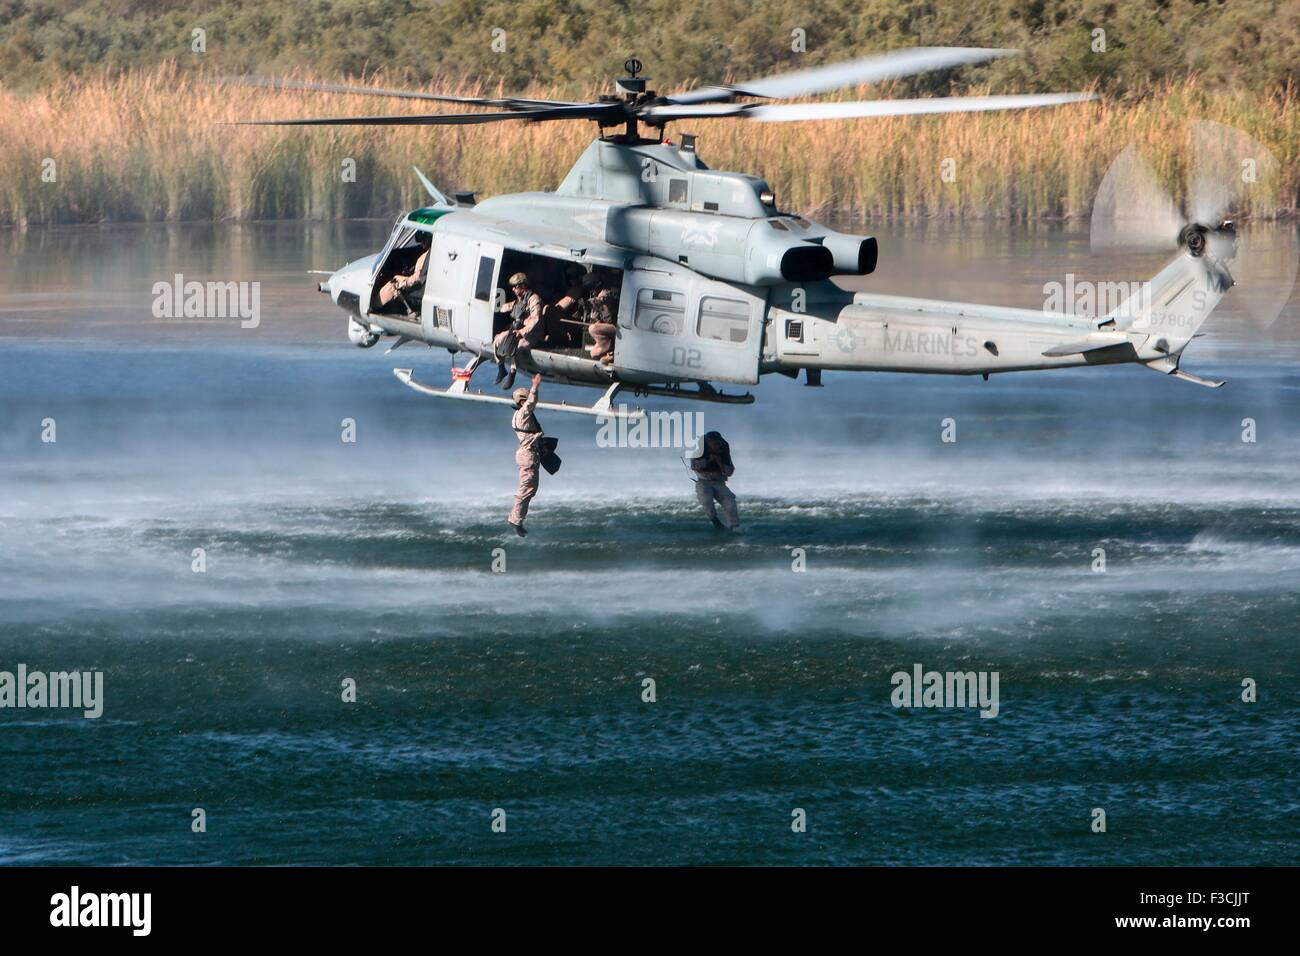 US Marine delle forze speciali commandos con forza di 1 società di ricognizione, saltare da un UH-1Y Venom elicottero nel lago Ferguson durante l'inserimento della formazione chiamato helocasting Ottobre 3, 2015 vicino a Yuma, Arizona. Foto Stock